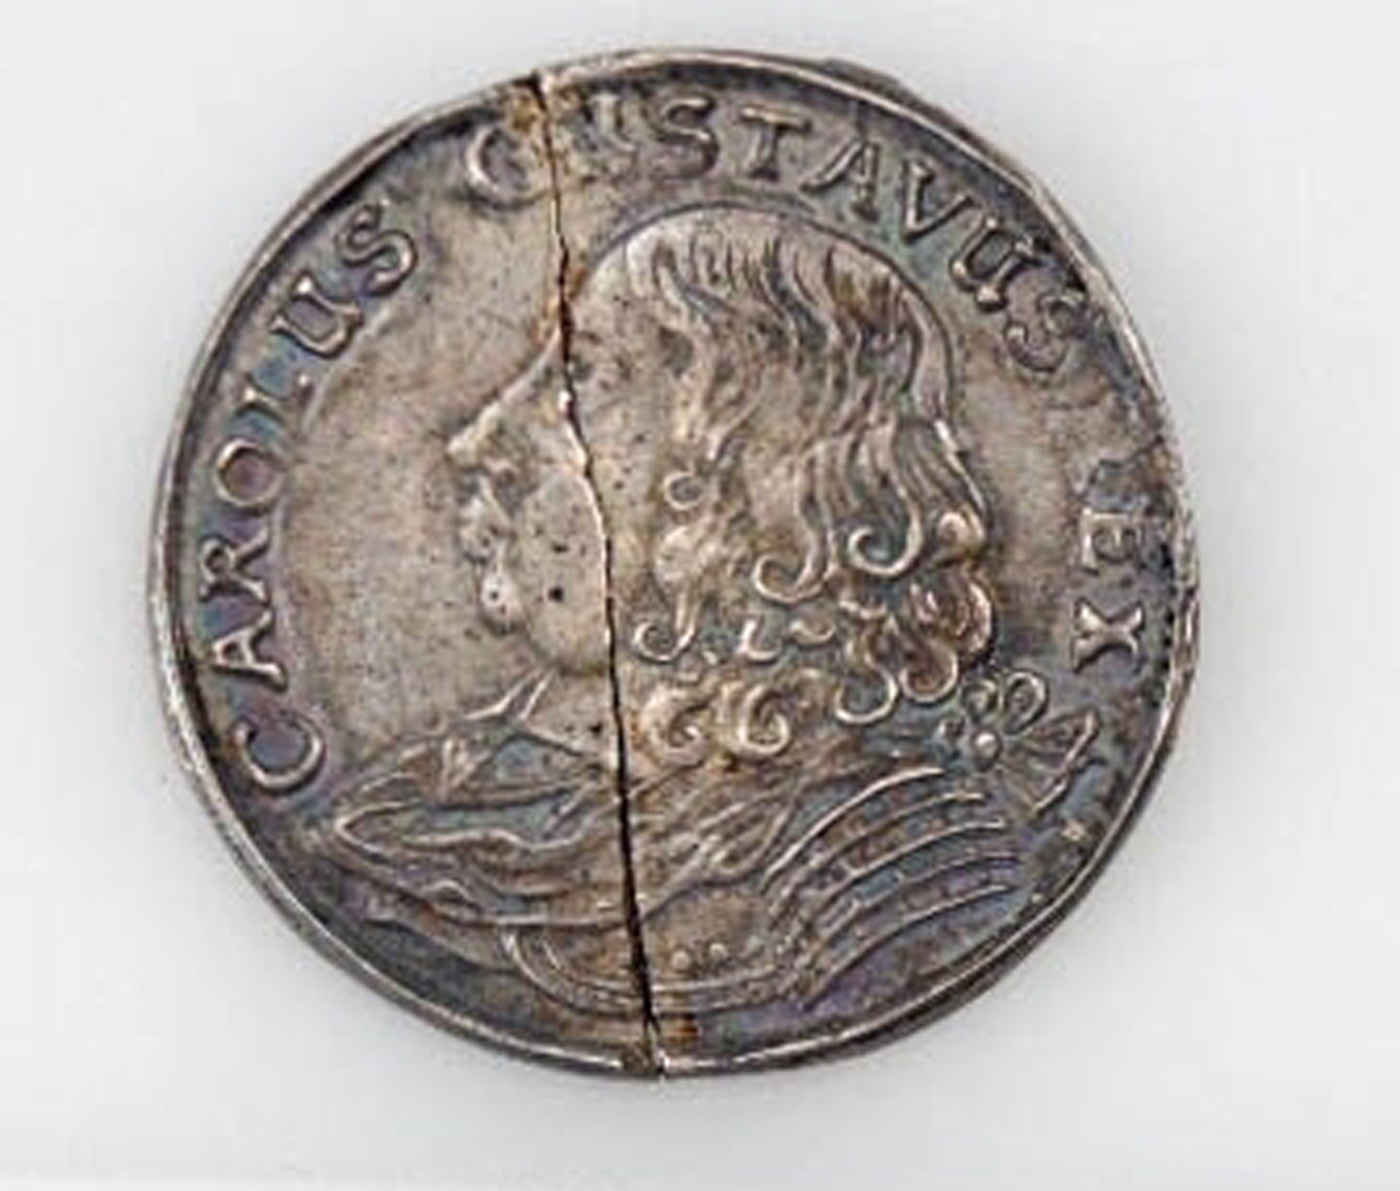 Färgfoto av mynt med kungen i profil.